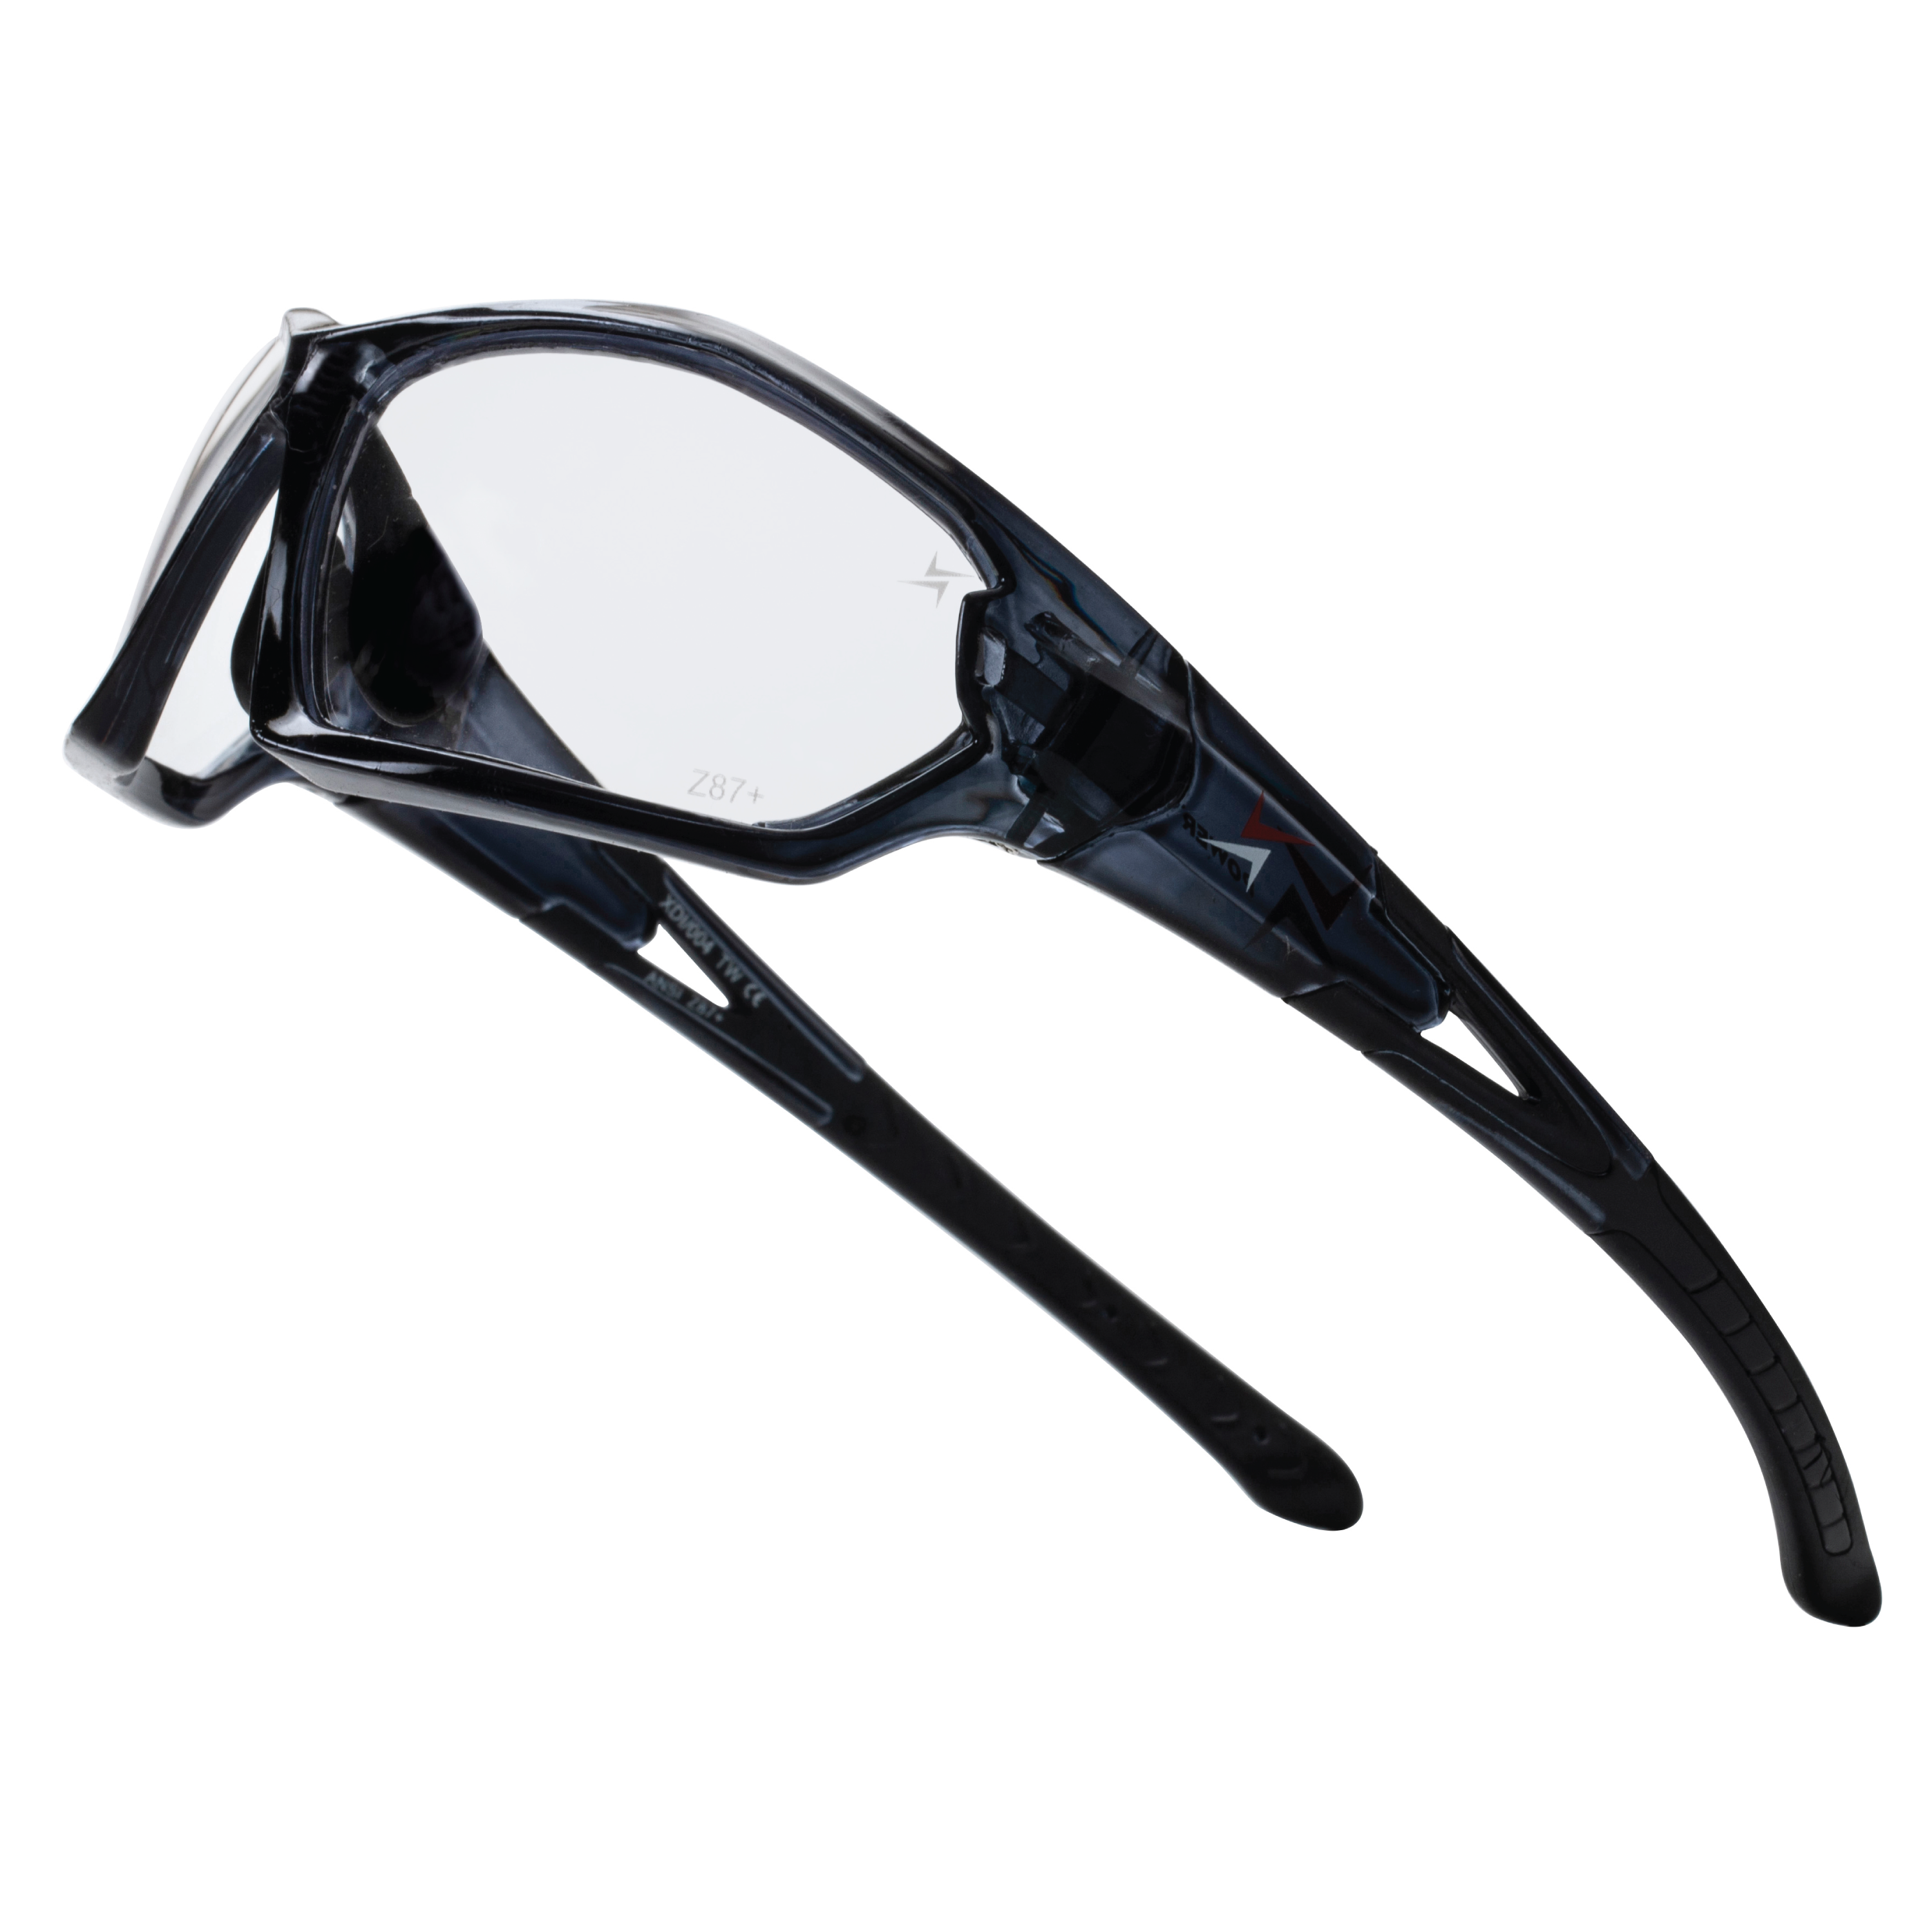 Clear Lens Translucent Black Frame Sport Safety Glasses with Adjustable Nose Pads.